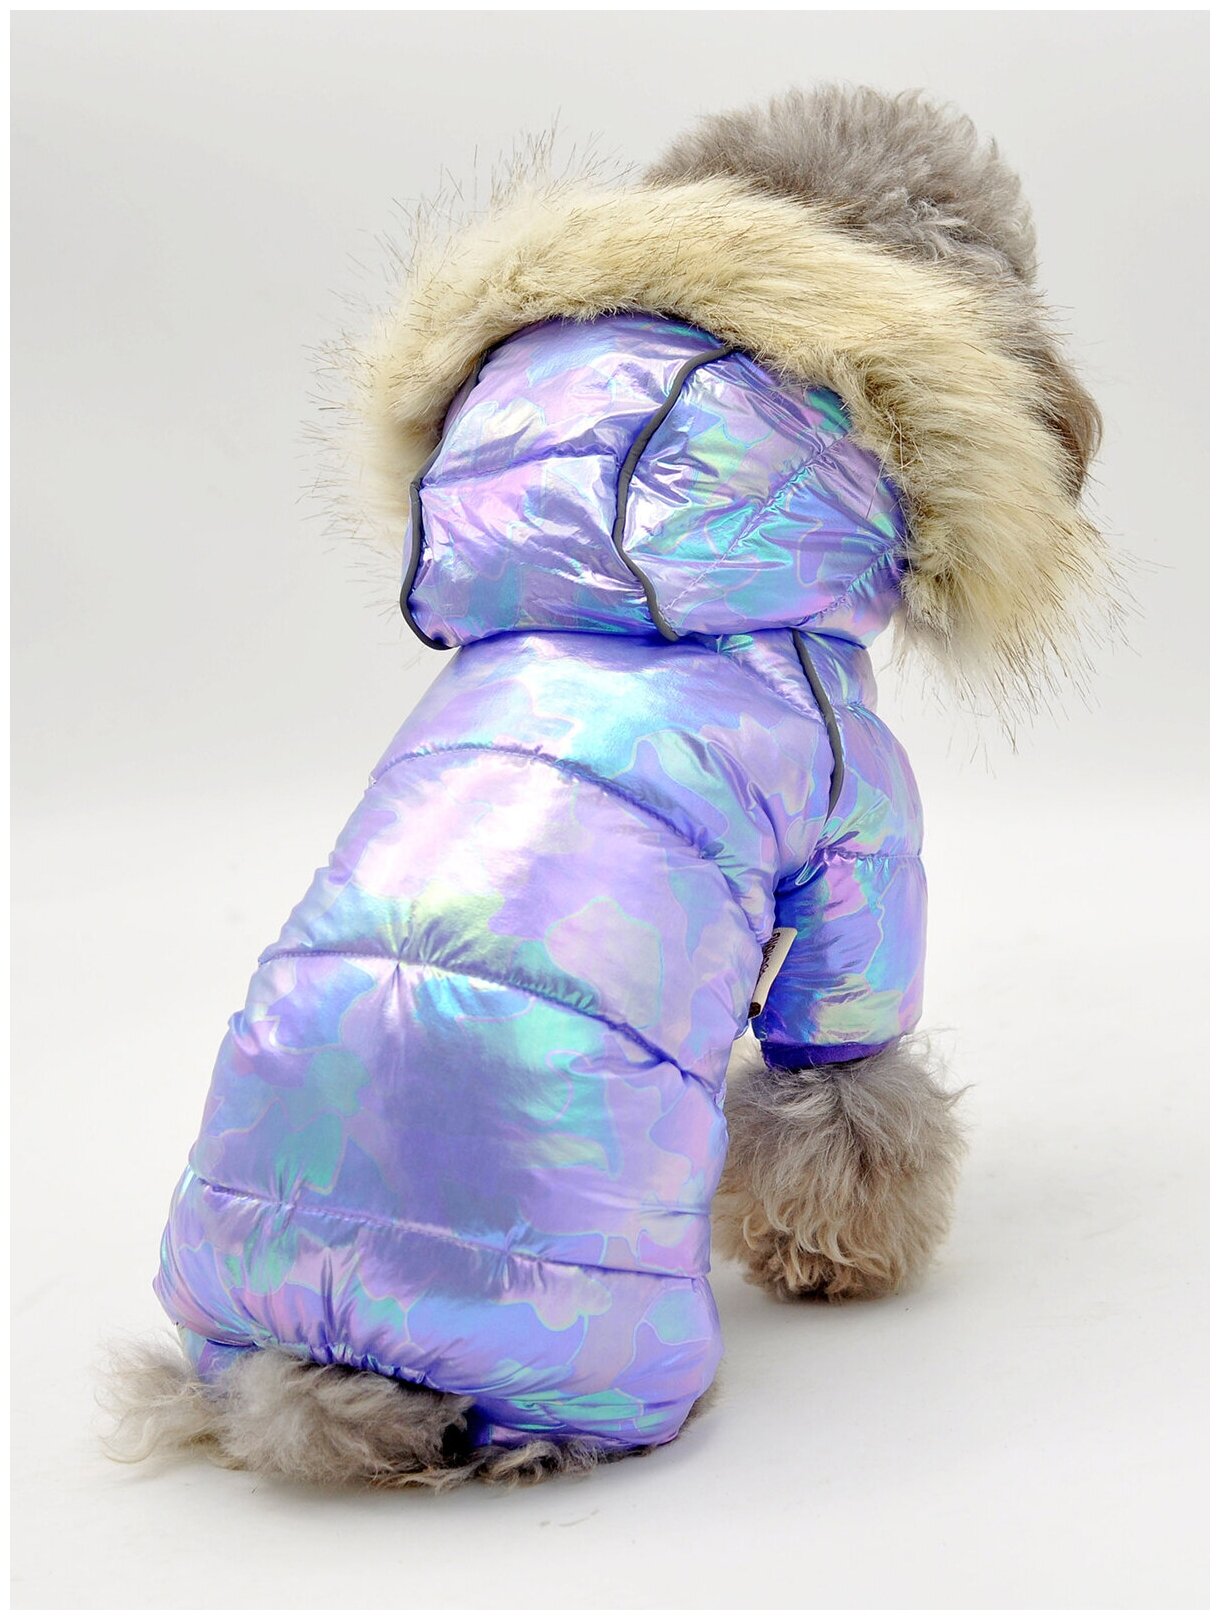 Комбинезон куртка для собак зимняя фиолетовая теплая (Размер: S) грудь собаки 36 см; Длина спинки 23 см